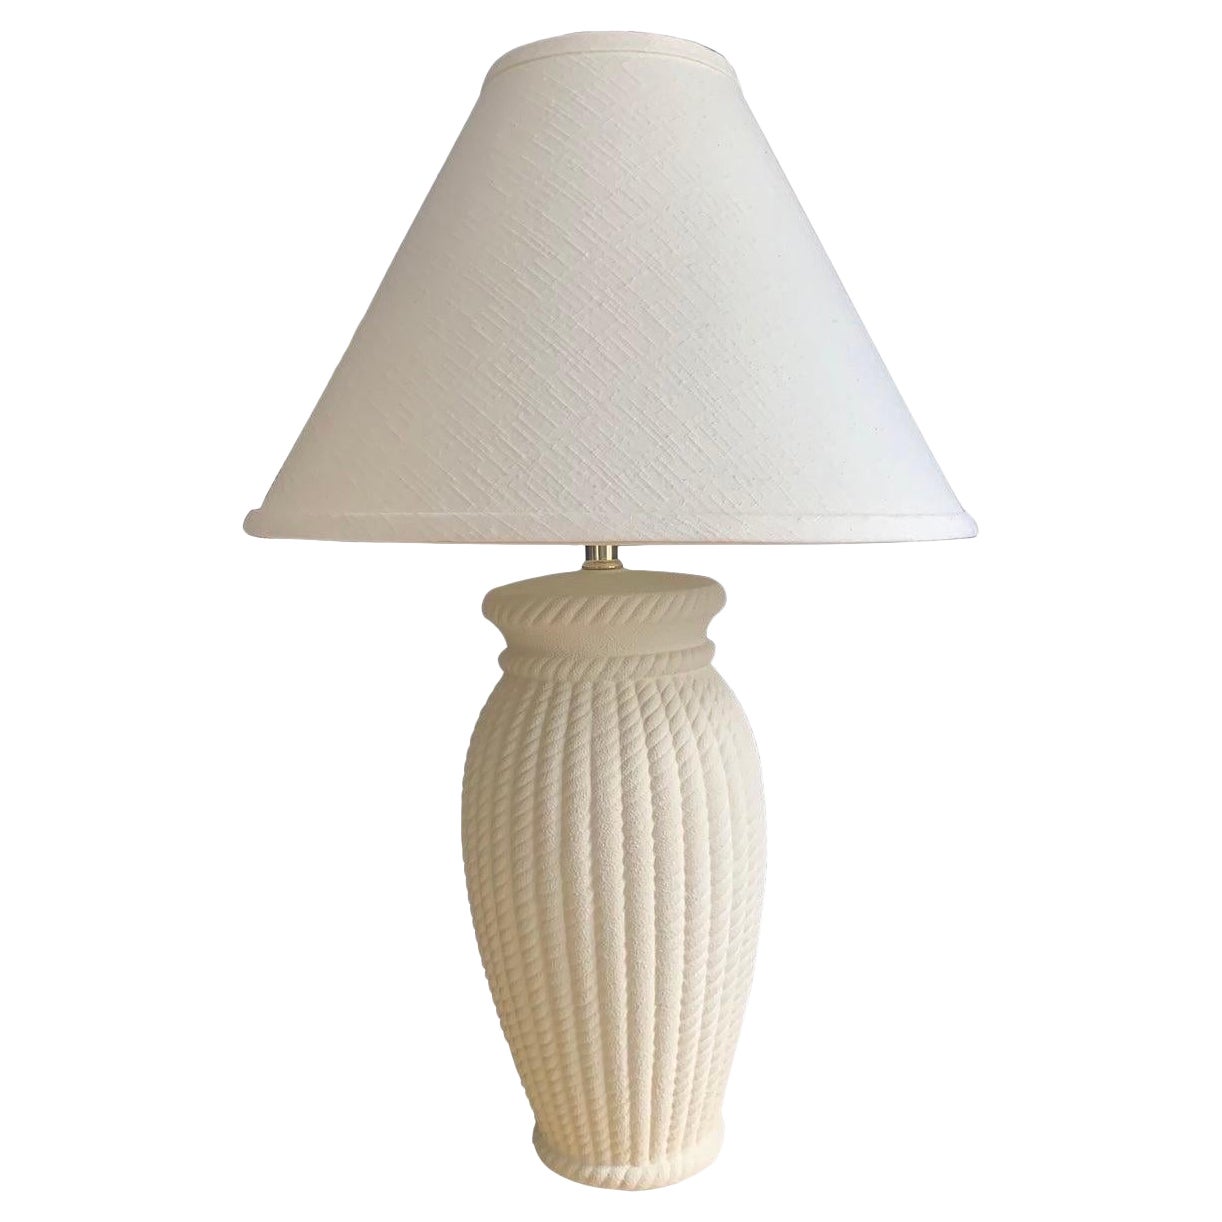 Lampe postmoderne en céramique blanche tressée avec abat-jour